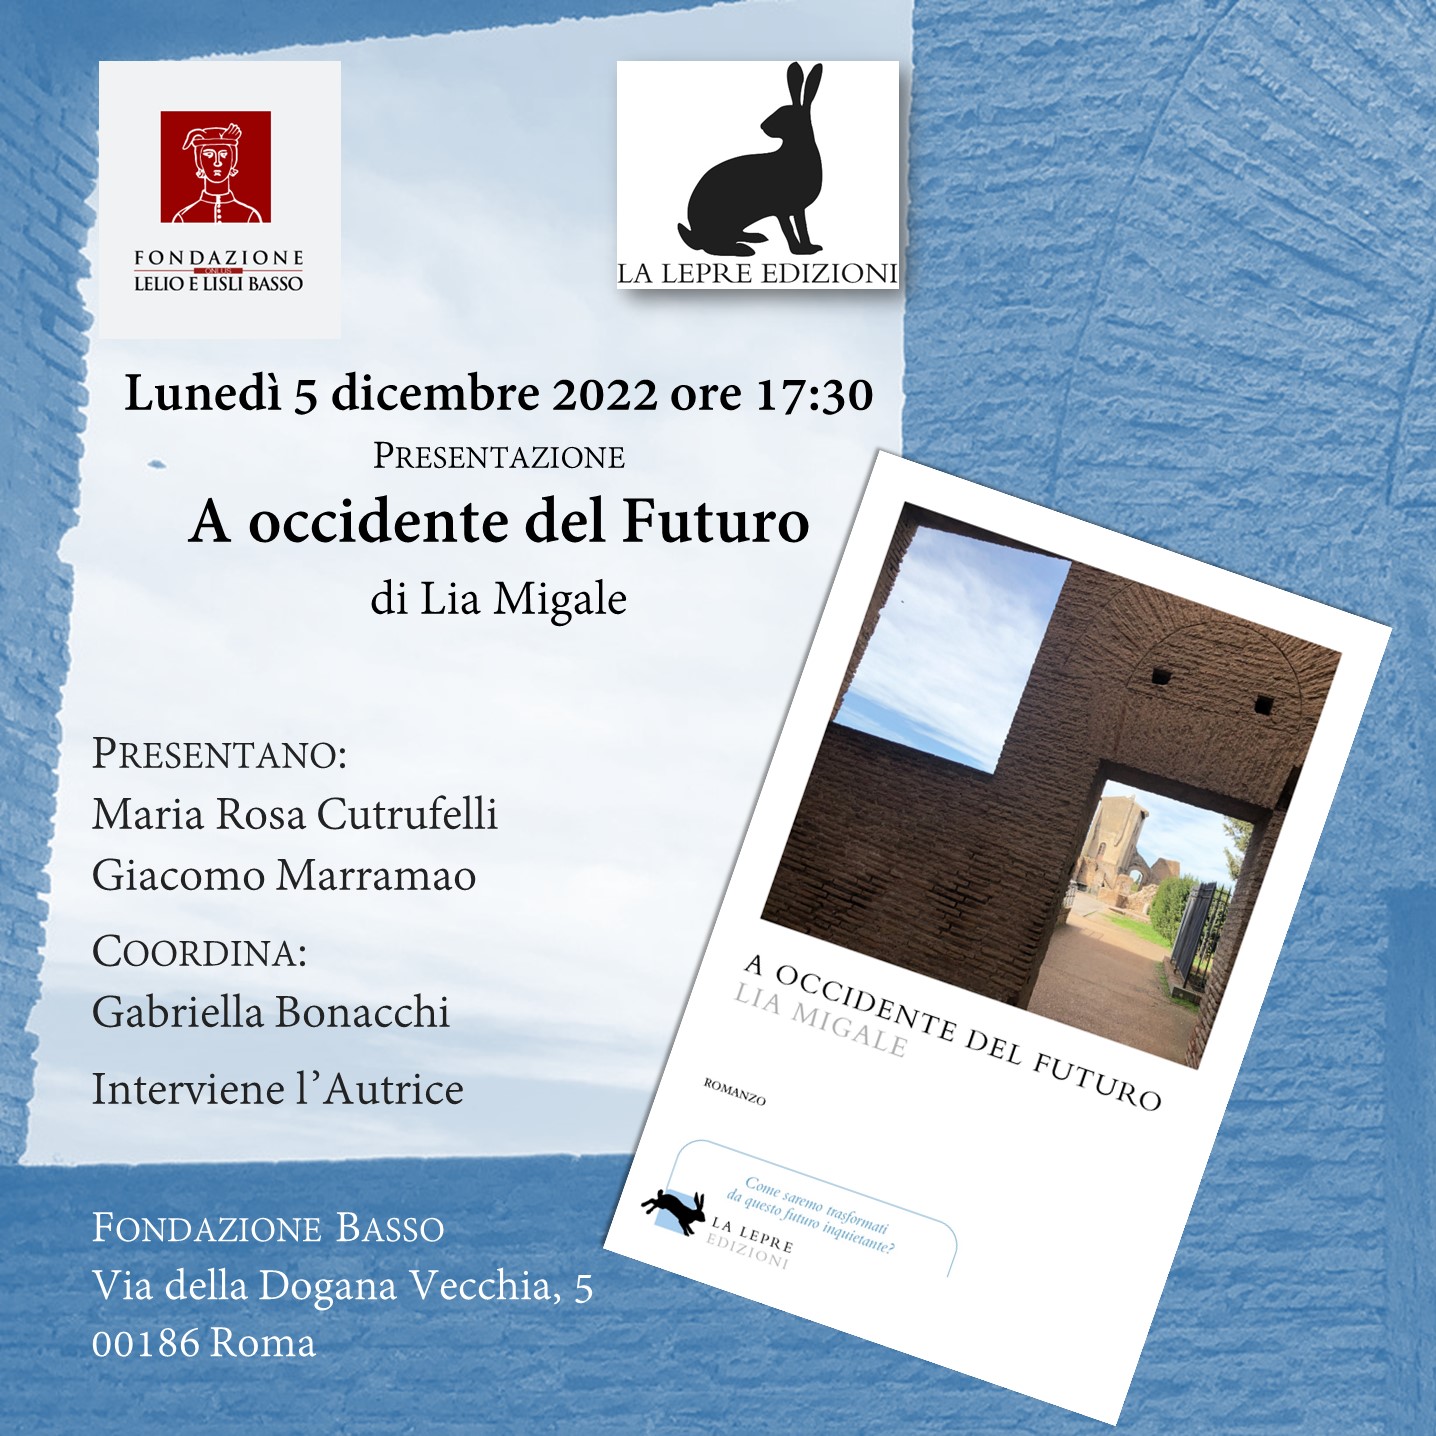 Alla Fondazione Basso la presentazione dell’ultimo romanzo di Lia Migale “A Occidente del Futuro”